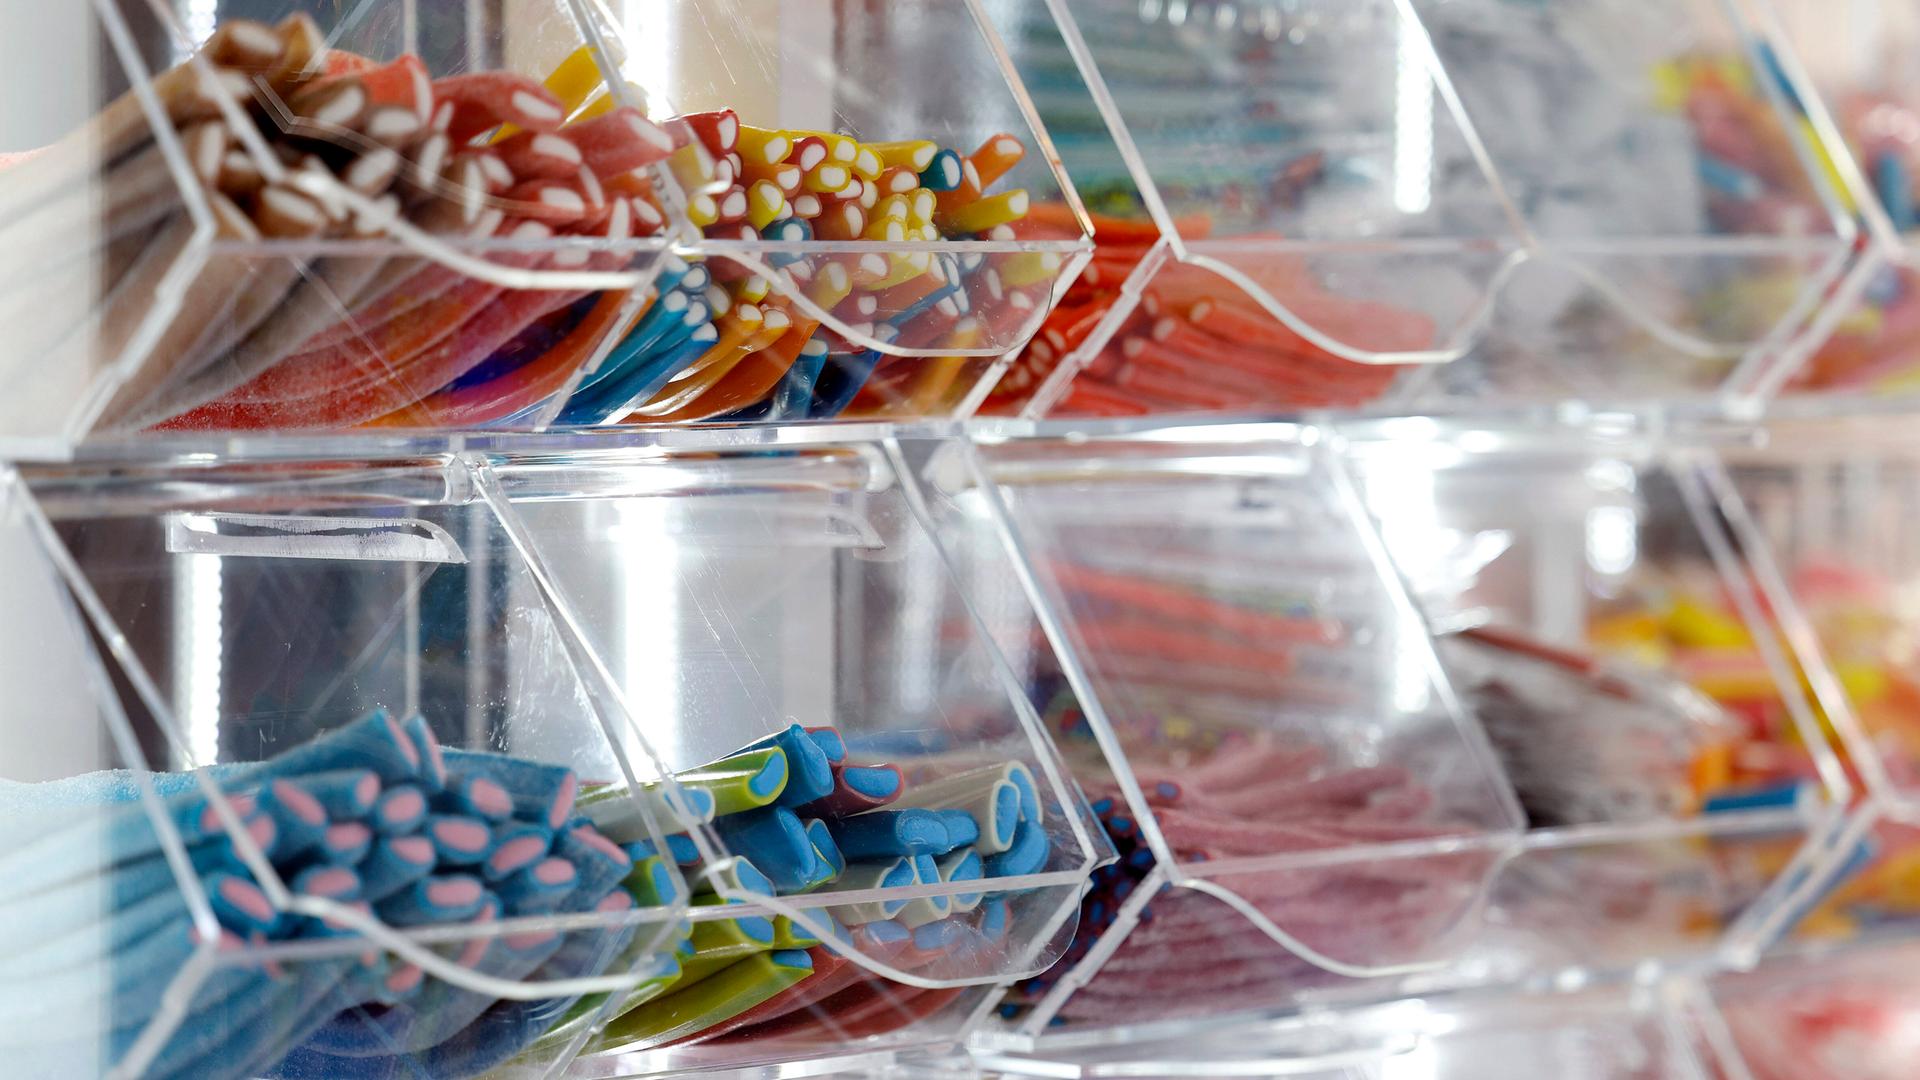 Das Bild zeigt mehrere Plastik-Schütten, in denen verschiedene Sorten von Fruchtgummis aufbewahrt sind.